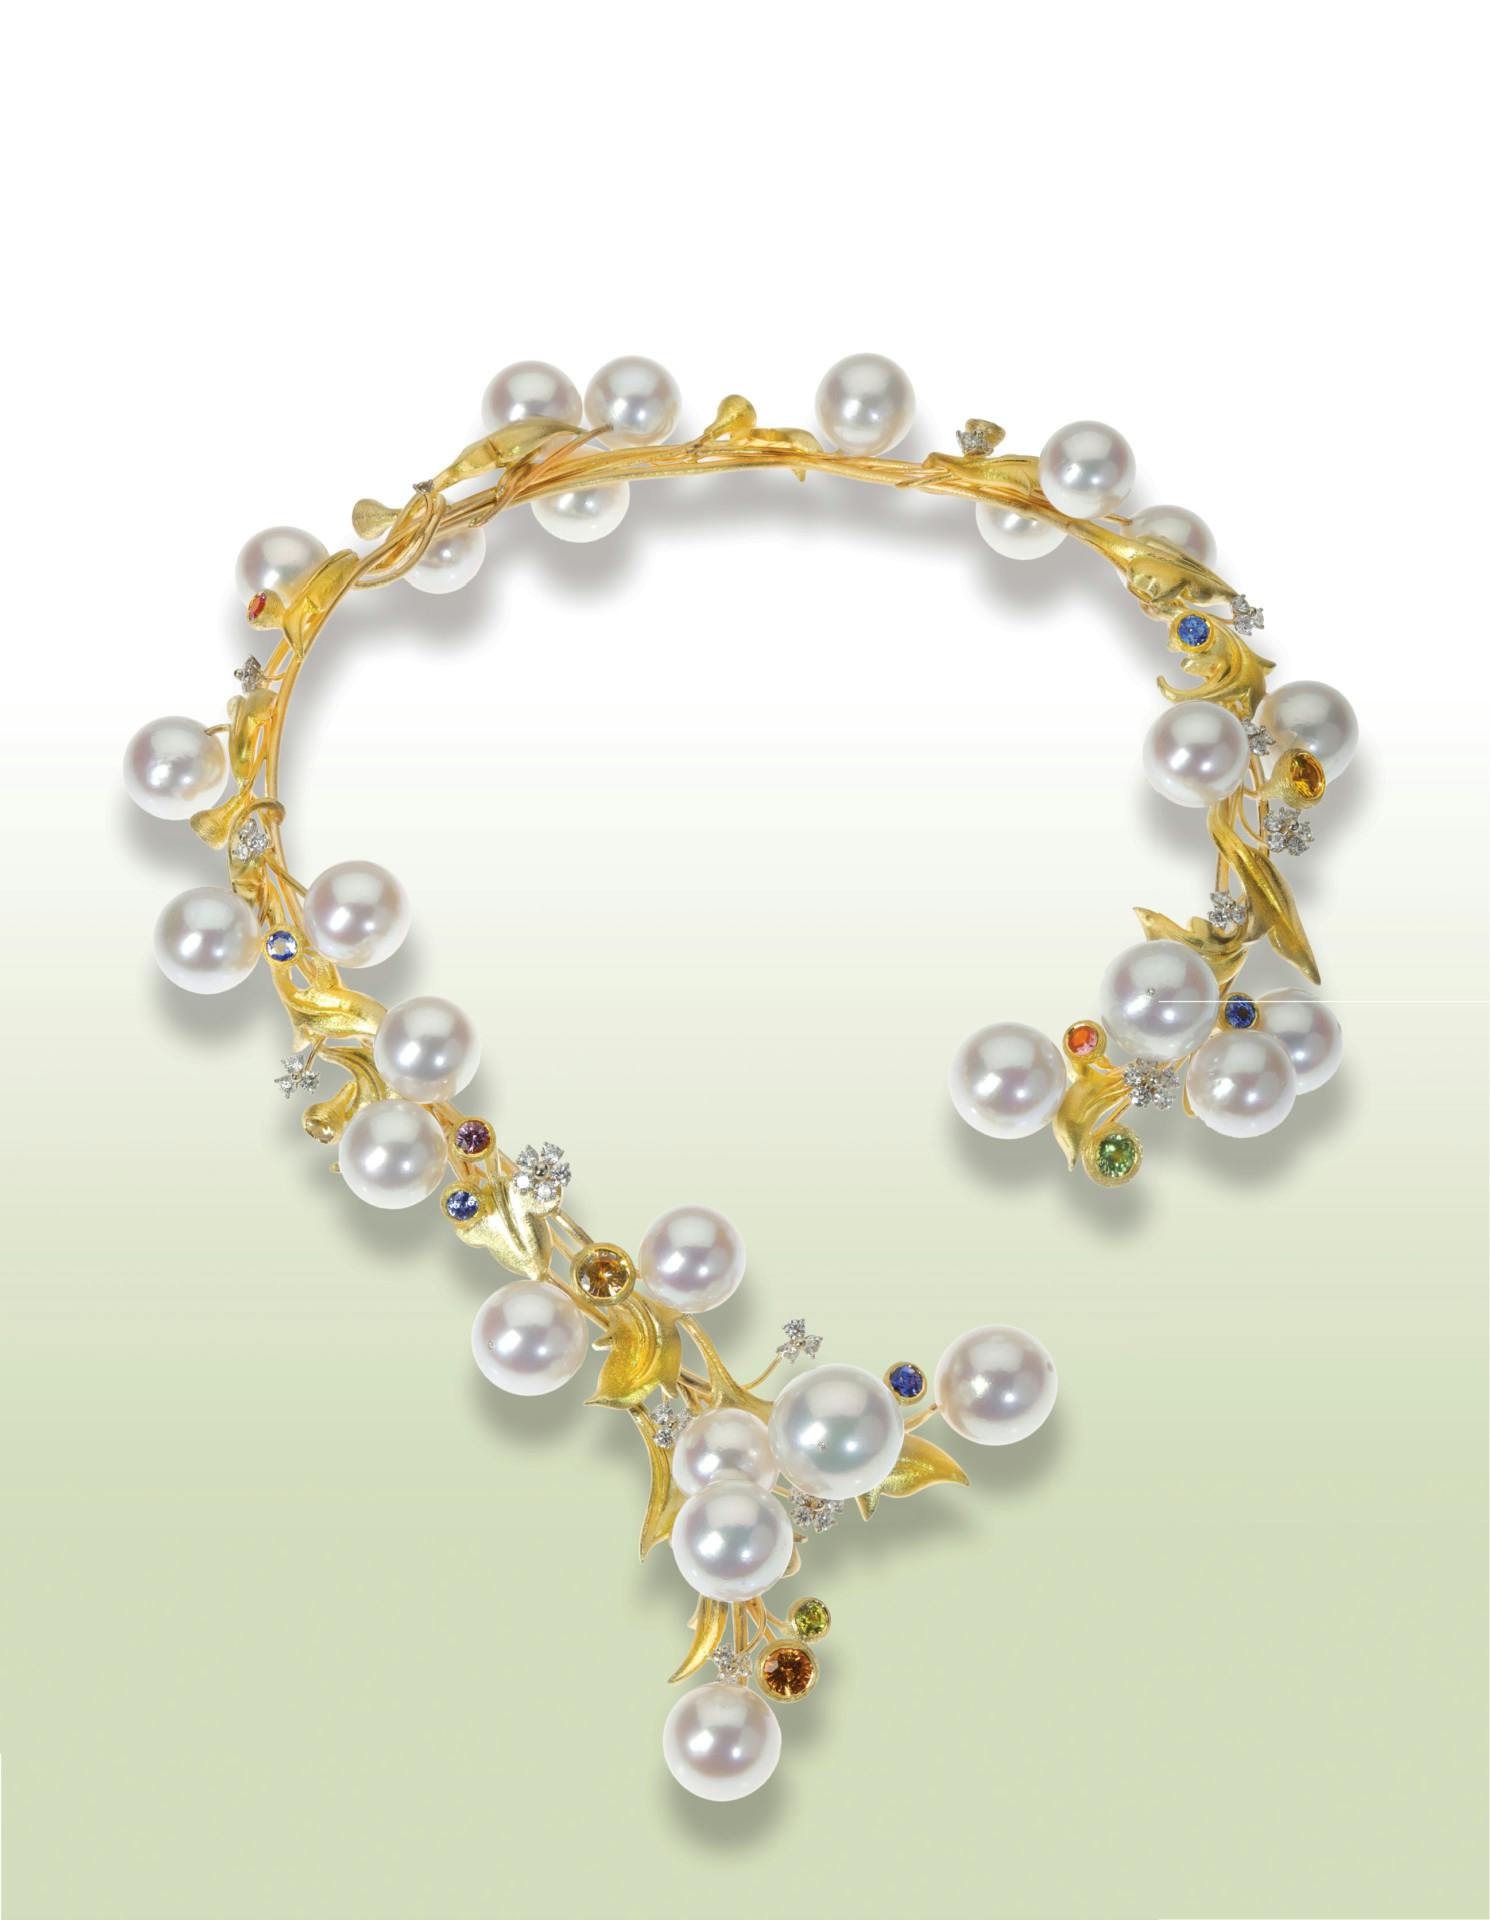 MJSA Custom Jeweler – Brenda Smith